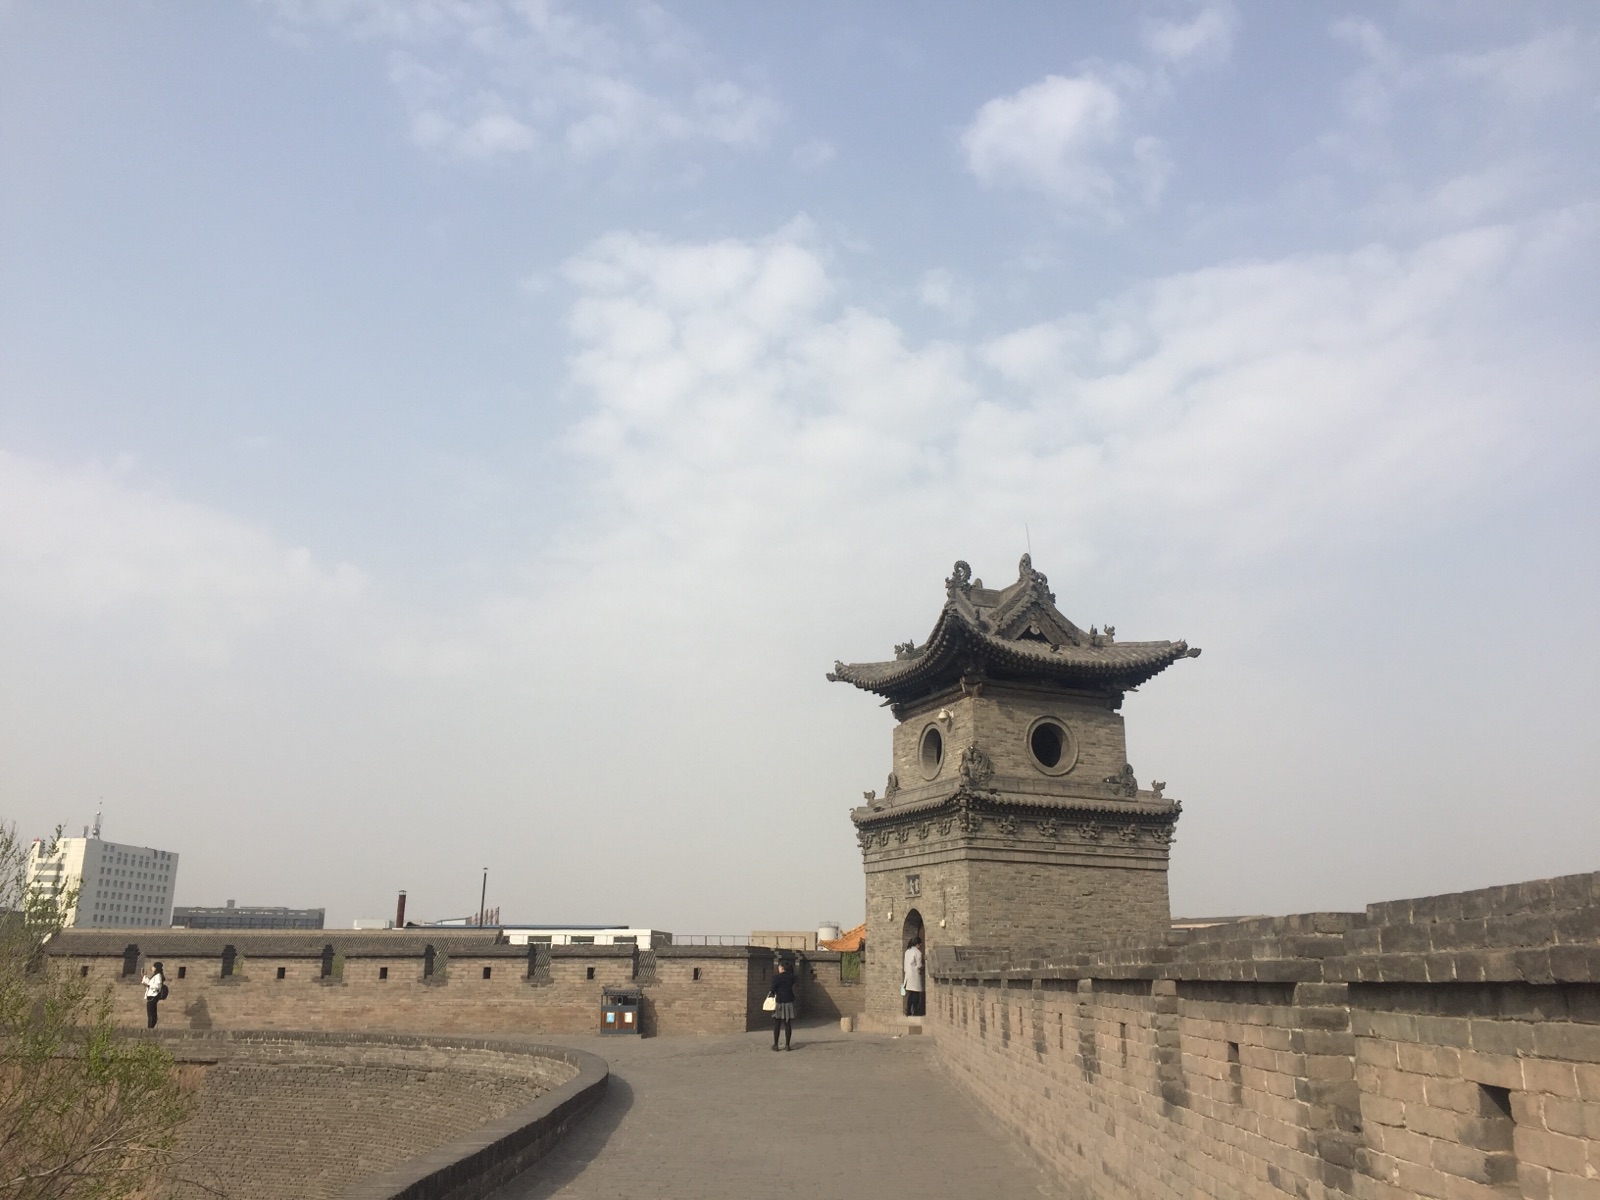 相比于西安城墙的雄伟，平遥古城可以说是袖珍而不失气度。和官家所修的西安